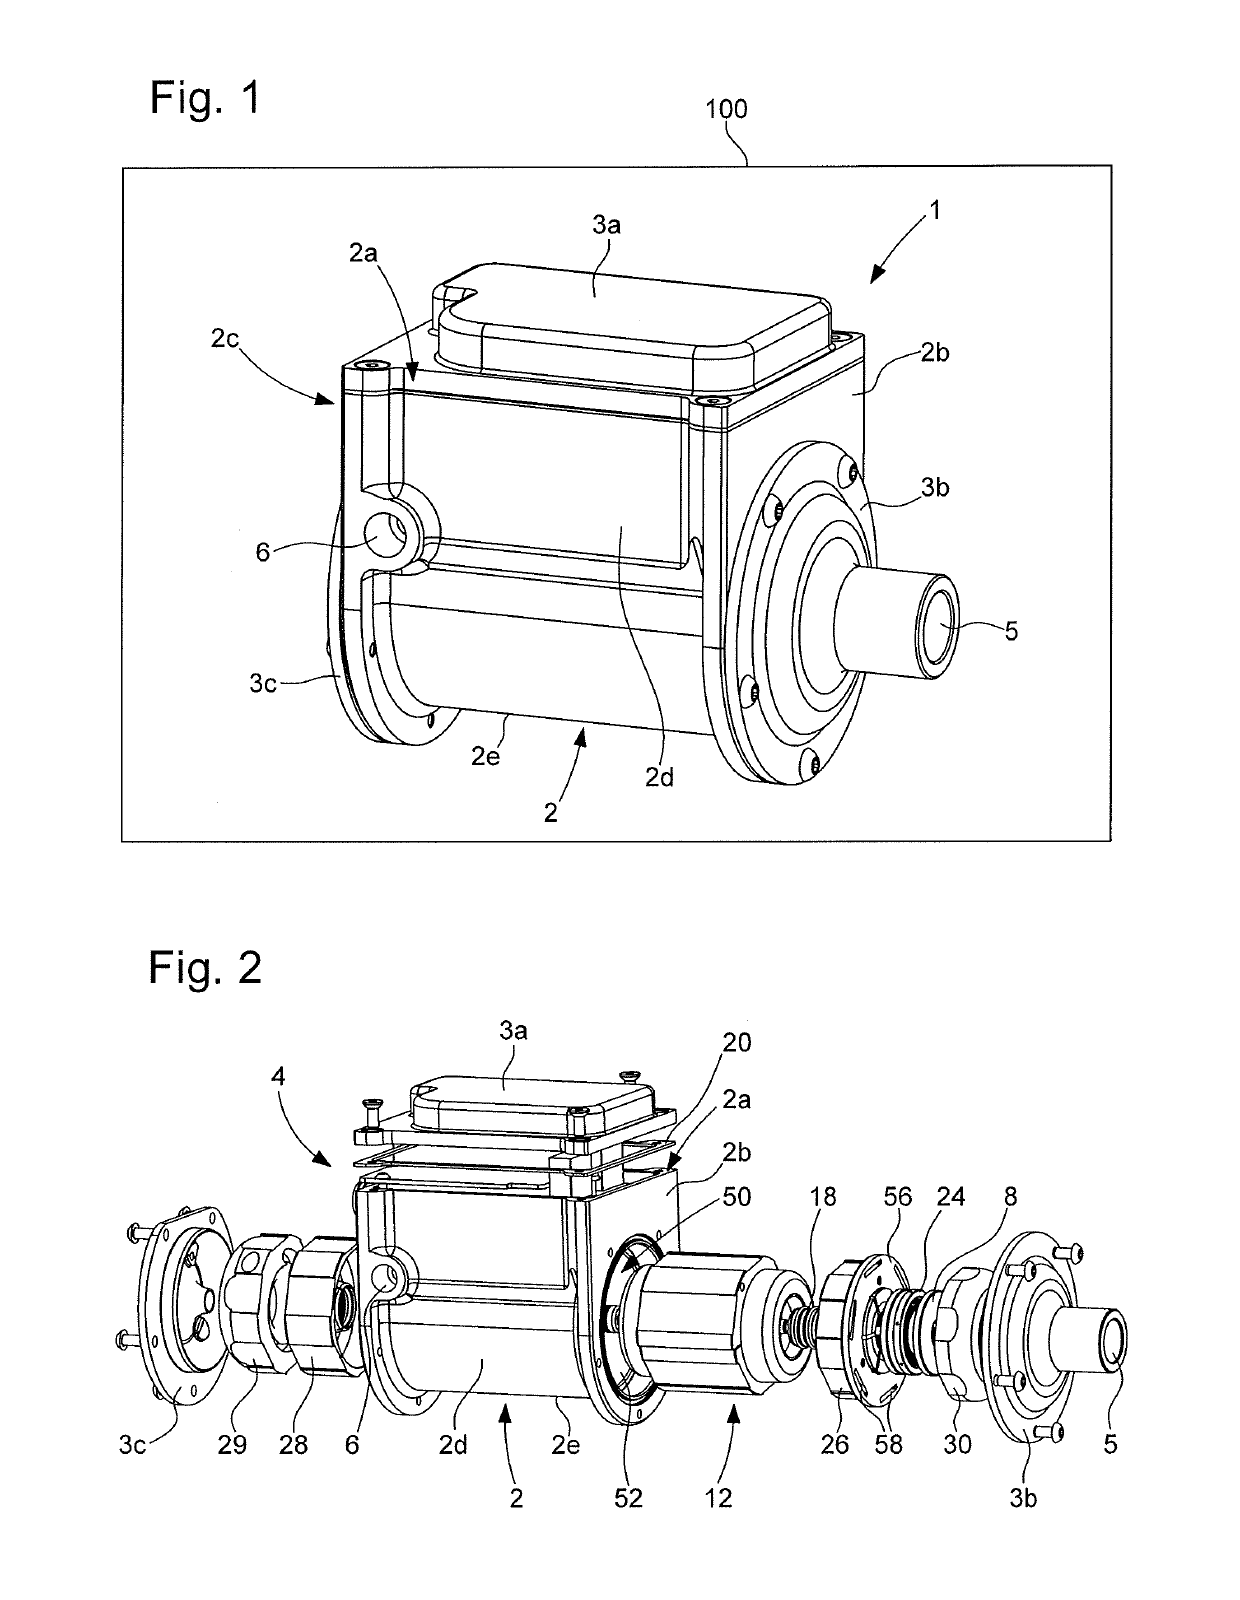 Heat pump comprising a fluid compressor